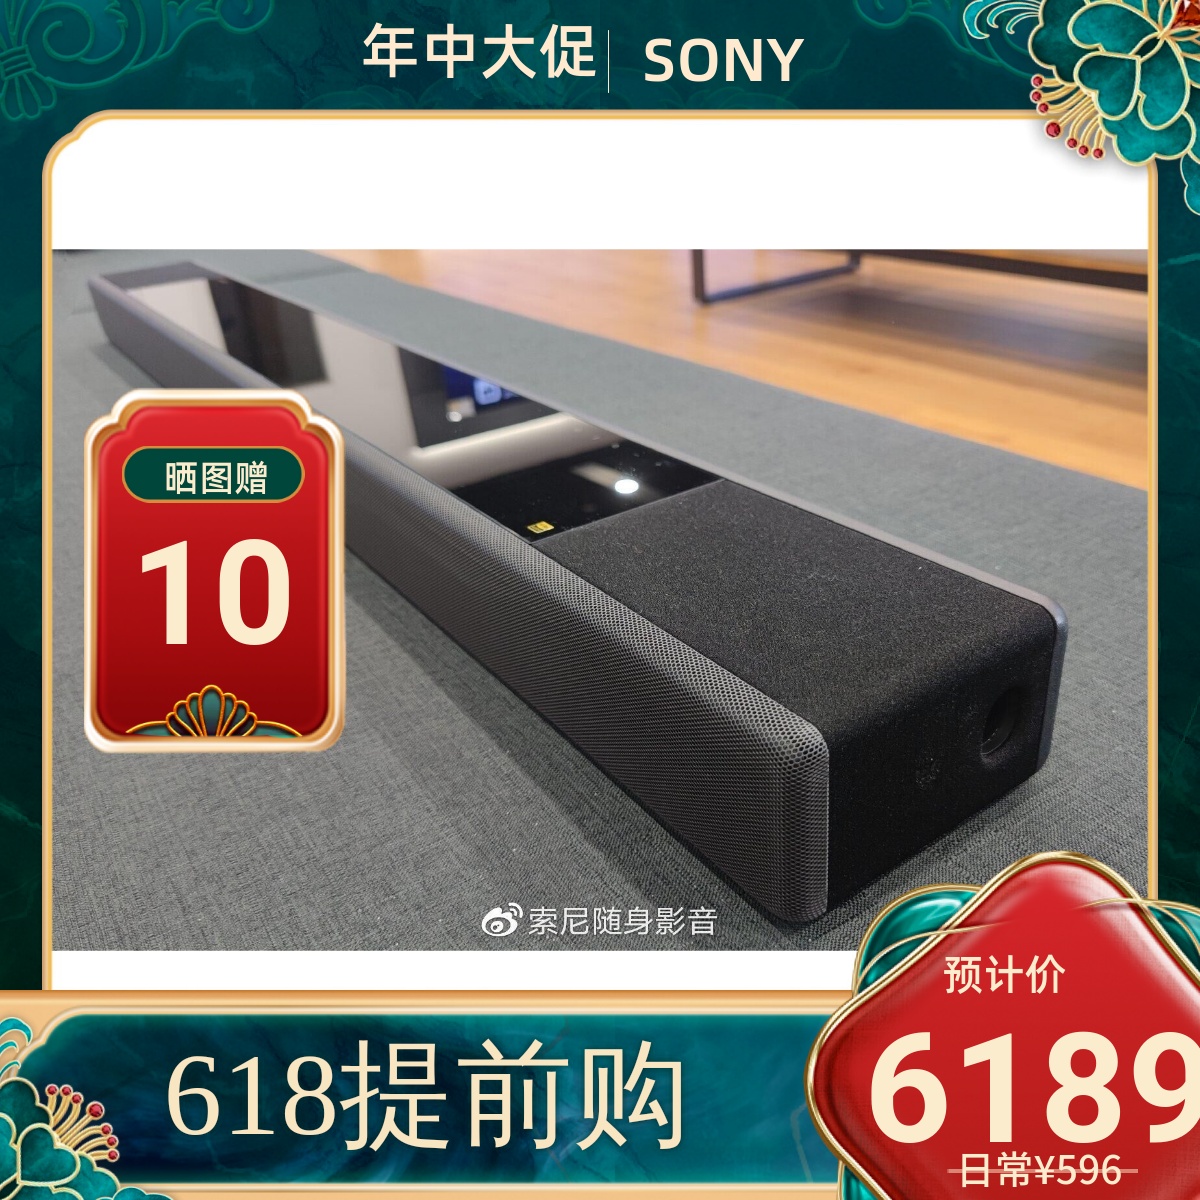 Sony/索尼 HT-A7000 电视回音壁客厅音响杜比7.1.2全景声音效音箱 影音电器 回音壁音响 原图主图